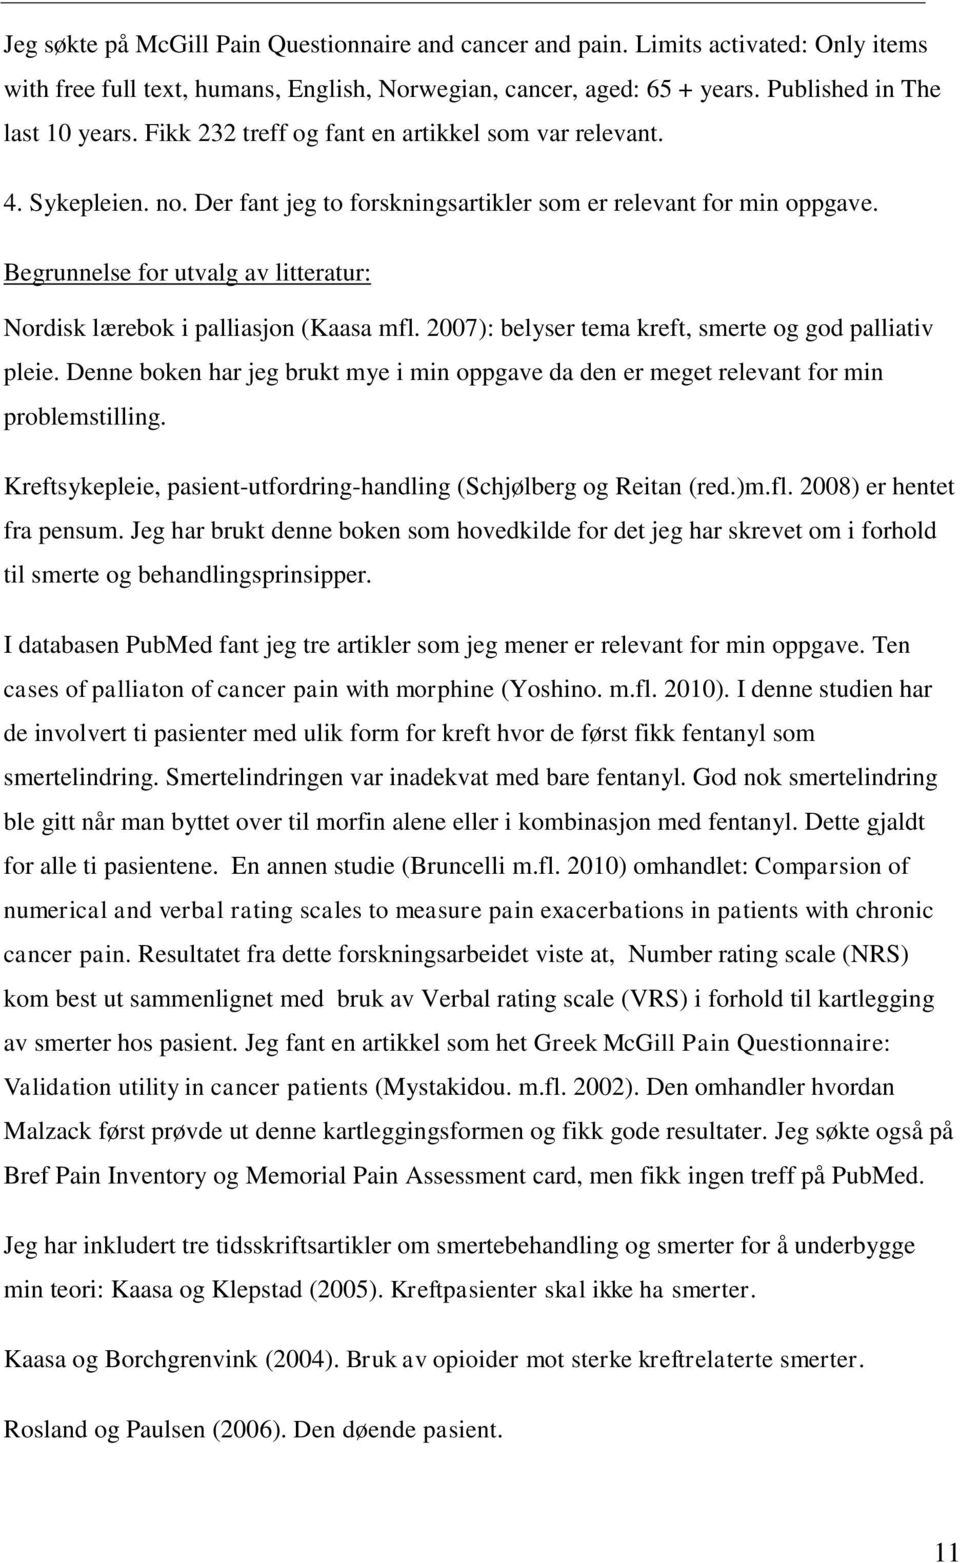 Begrunnelse for utvalg av litteratur: Nordisk lærebok i palliasjon (Kaasa mfl. 2007): belyser tema kreft, smerte og god palliativ pleie.